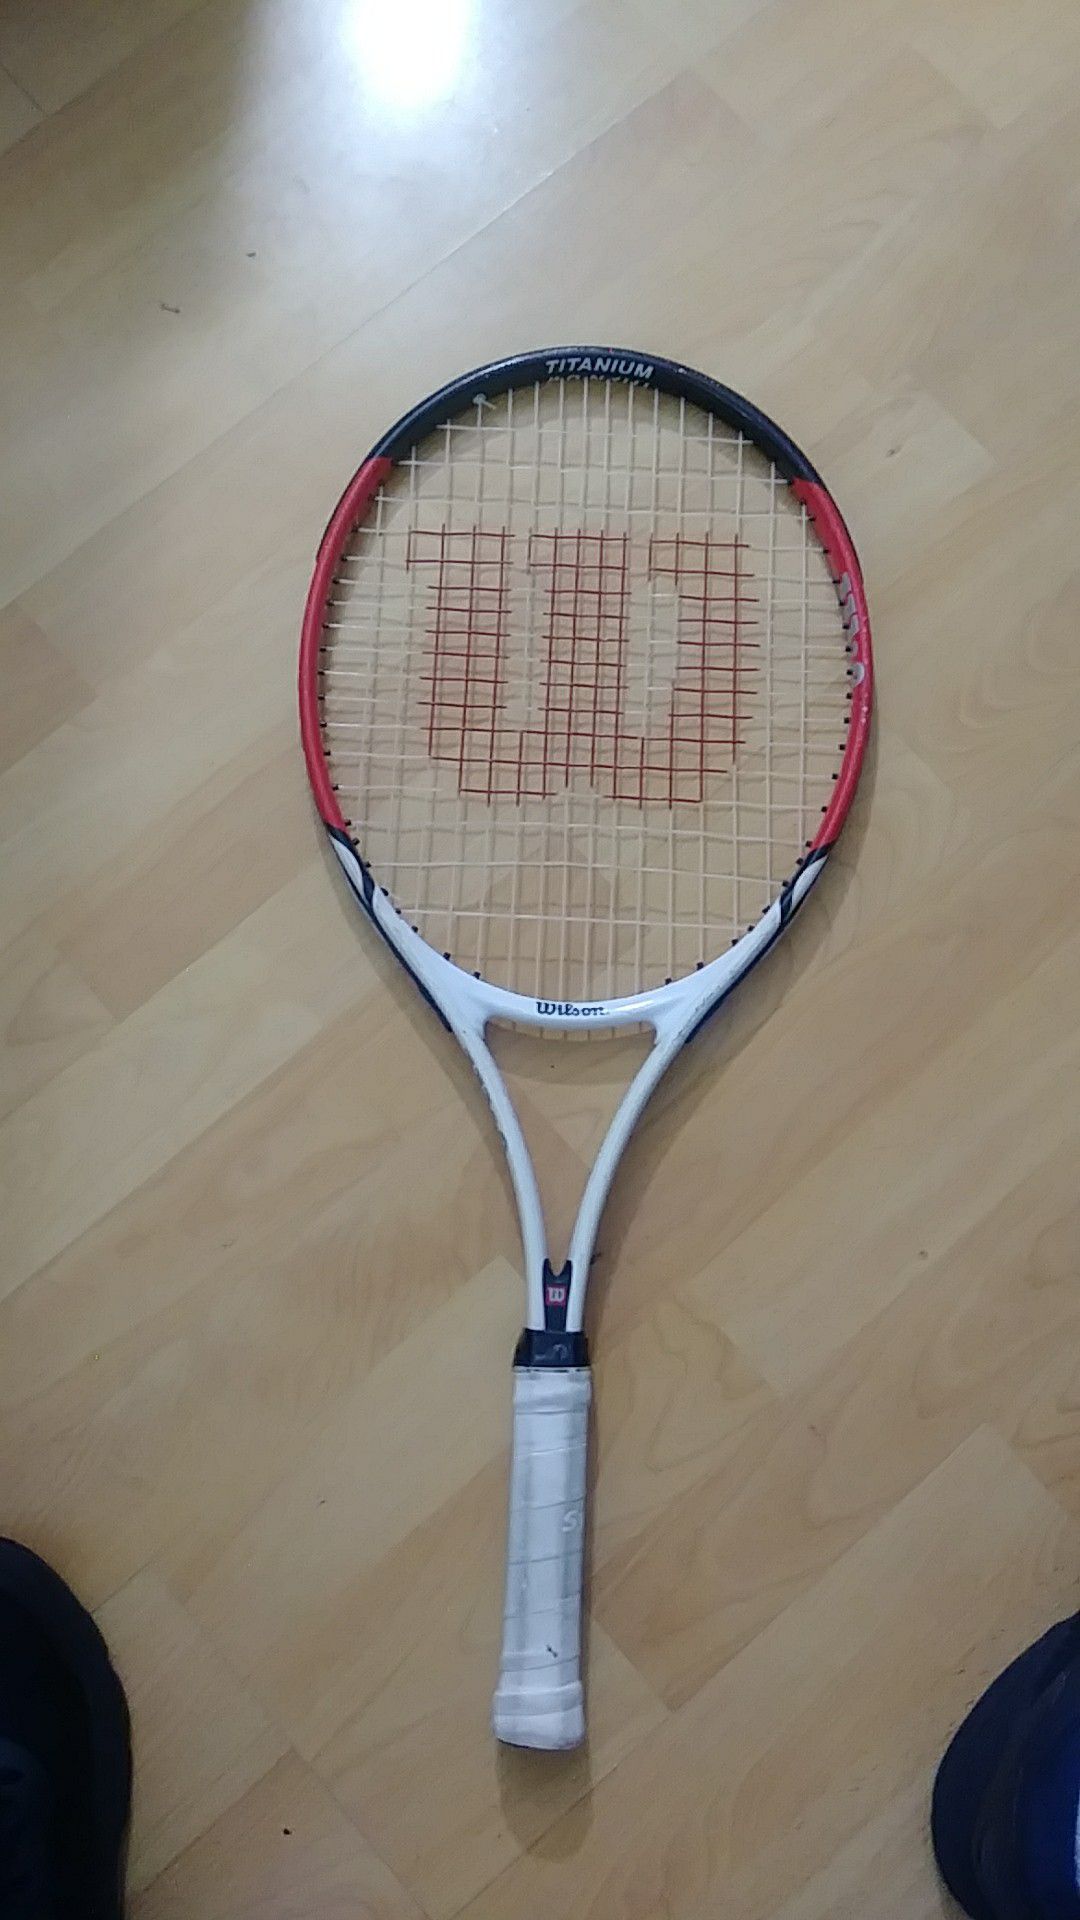 Kid's tennis racket